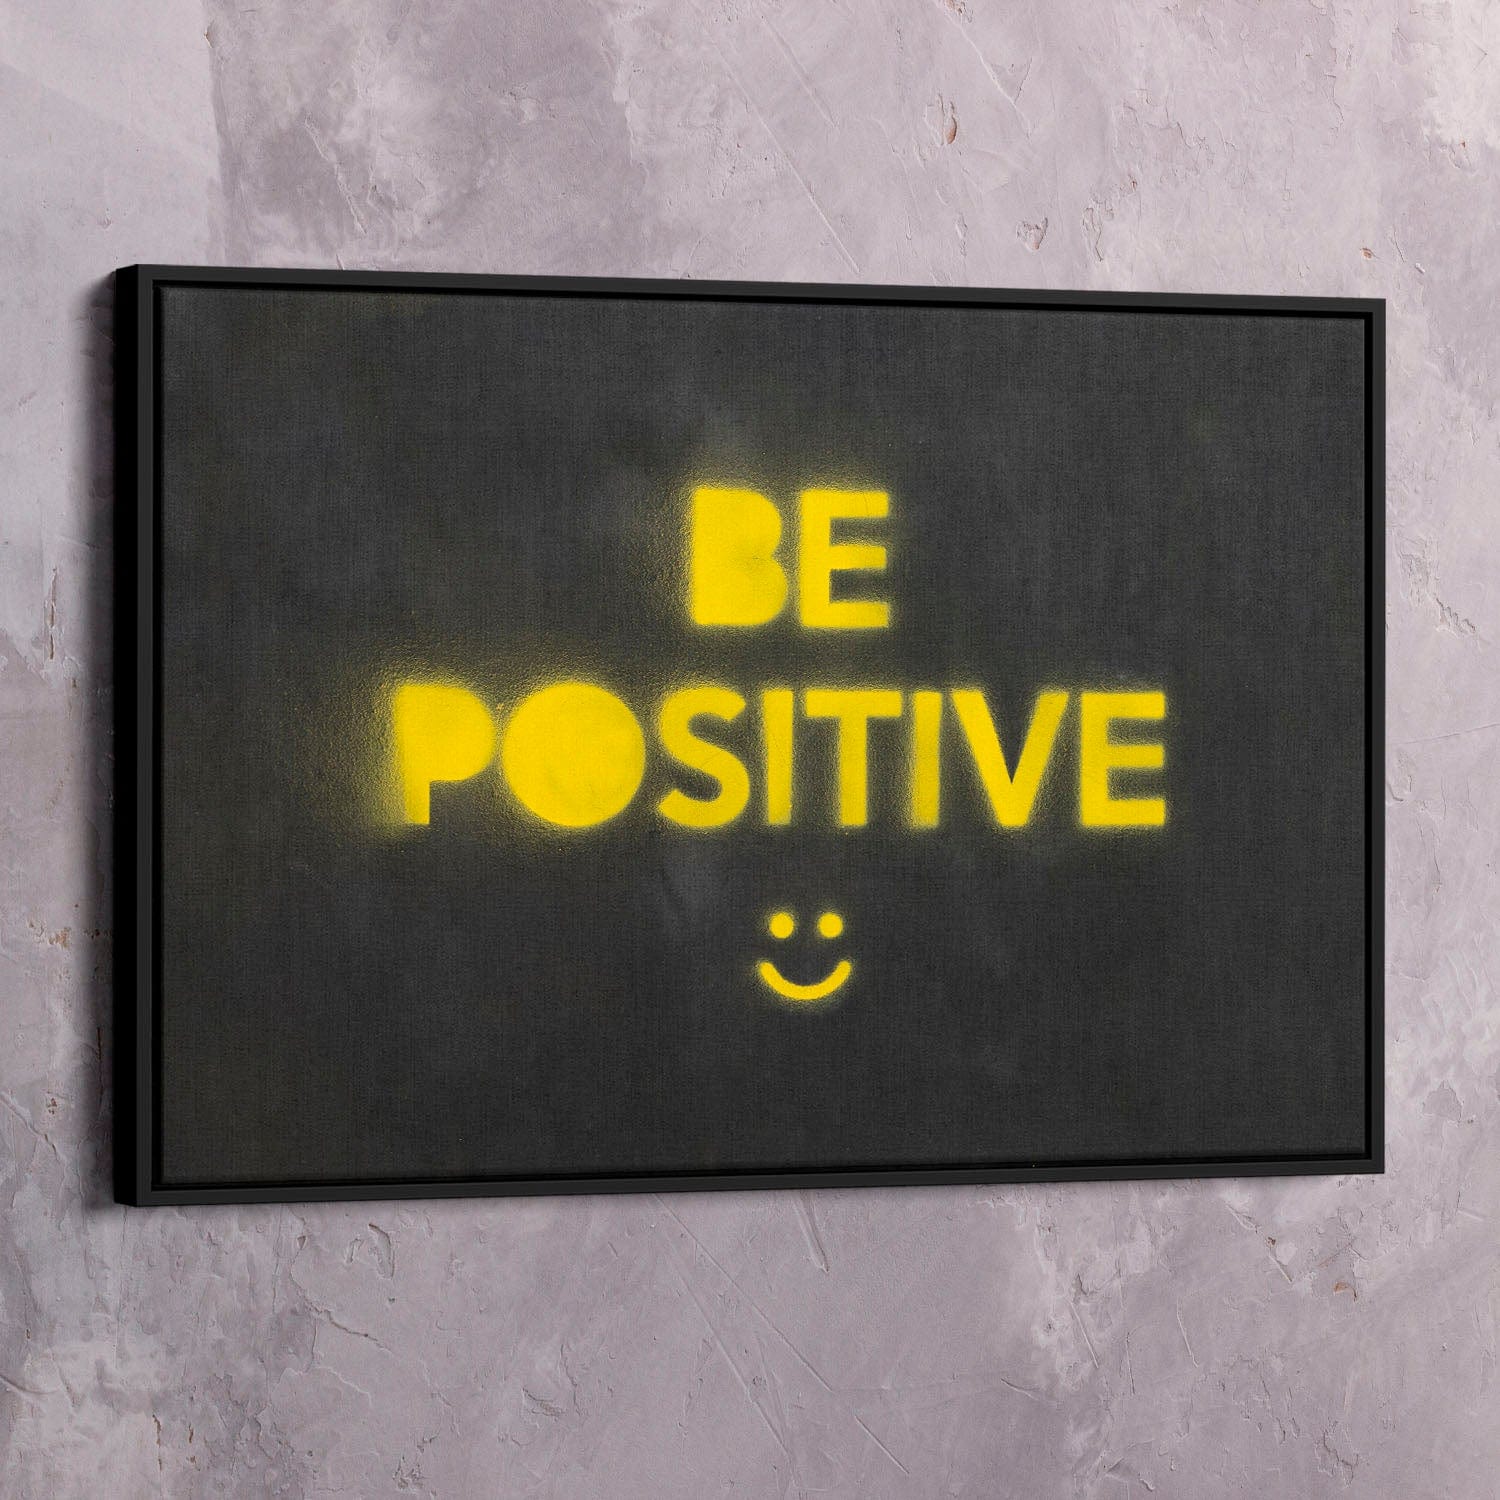 Be Positive Wall Art | Inspirational Wall Art Motivational Wall Art Quotes Office Art | ImpaktMaker Exclusive Canvas Art Landscape